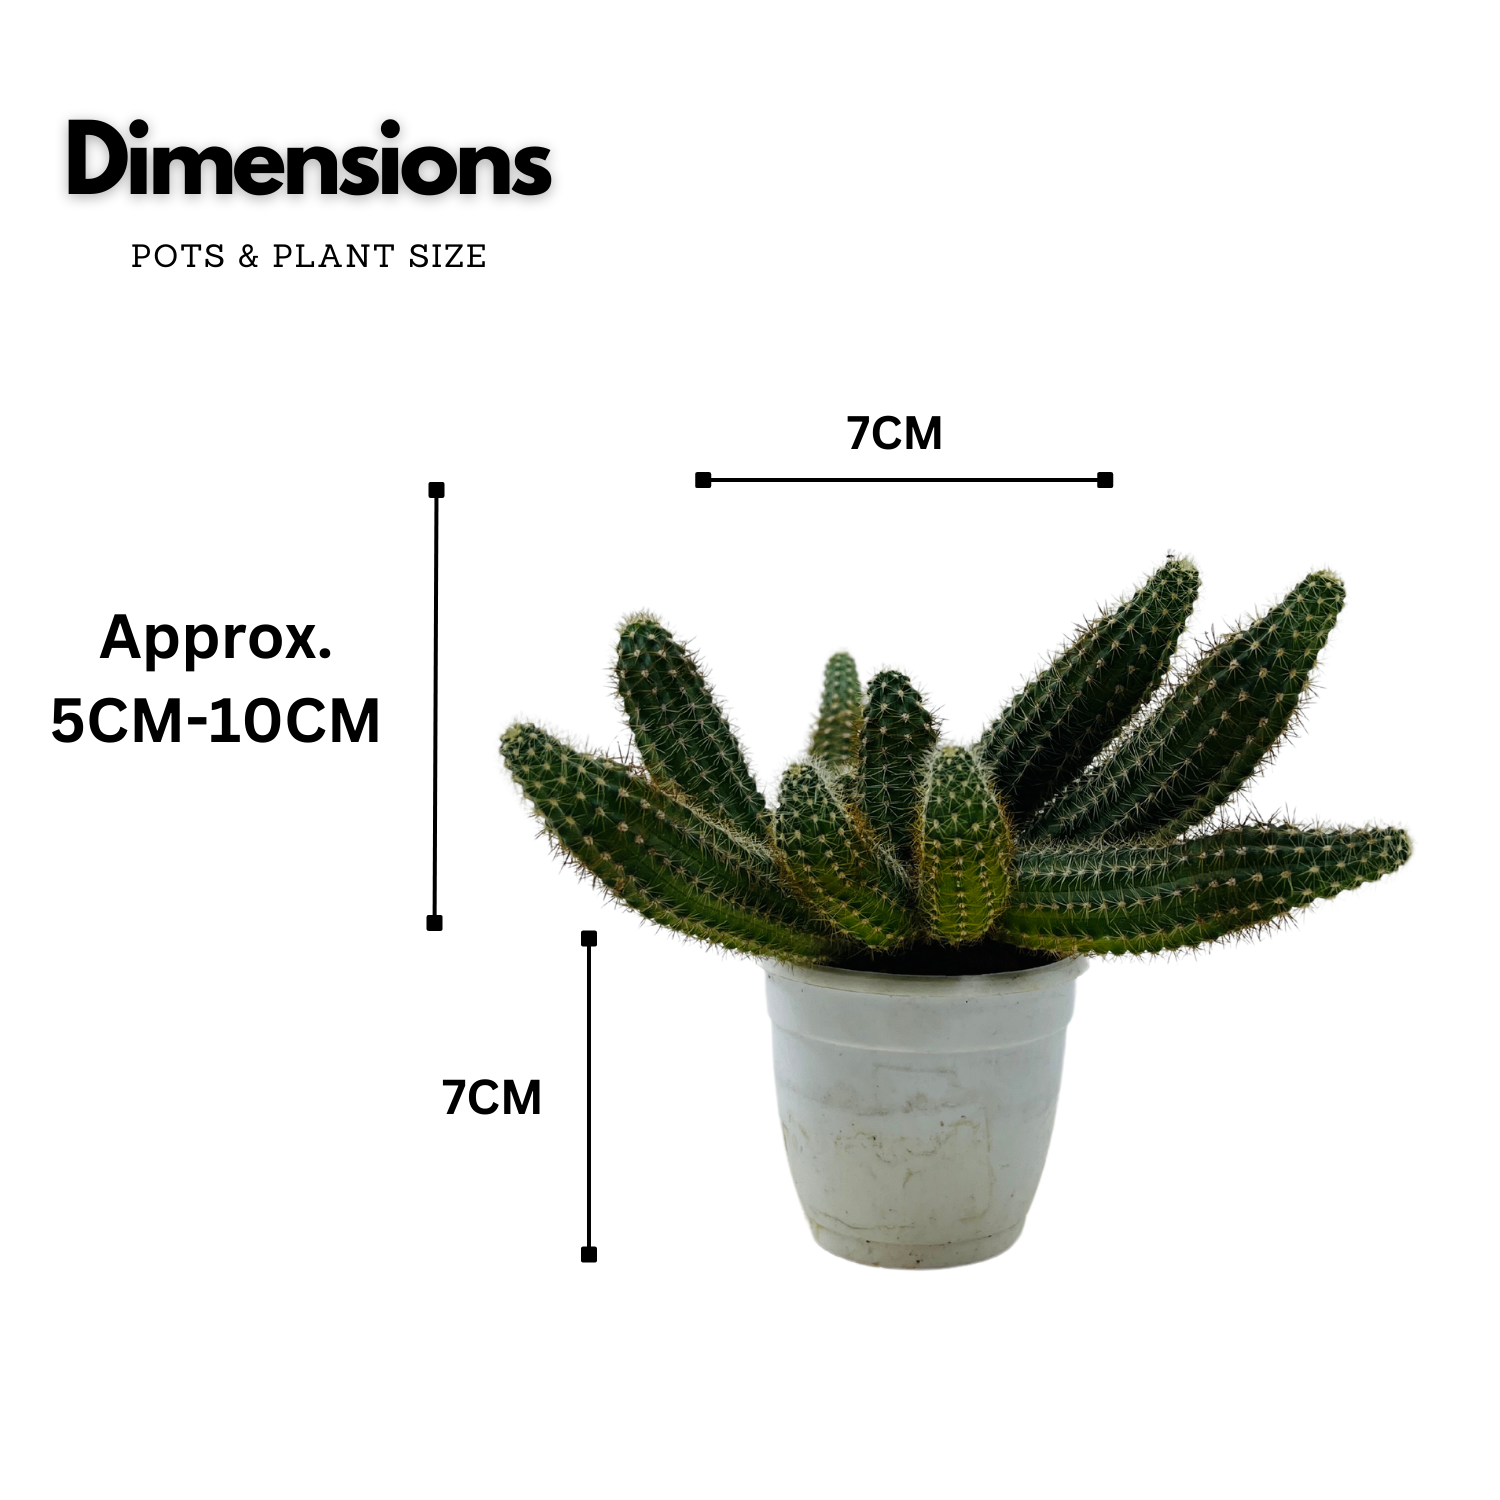 Peanut Cactus / Echinopsis chamaecereus - Live Cactus Plant In Pot (Home & Garden)